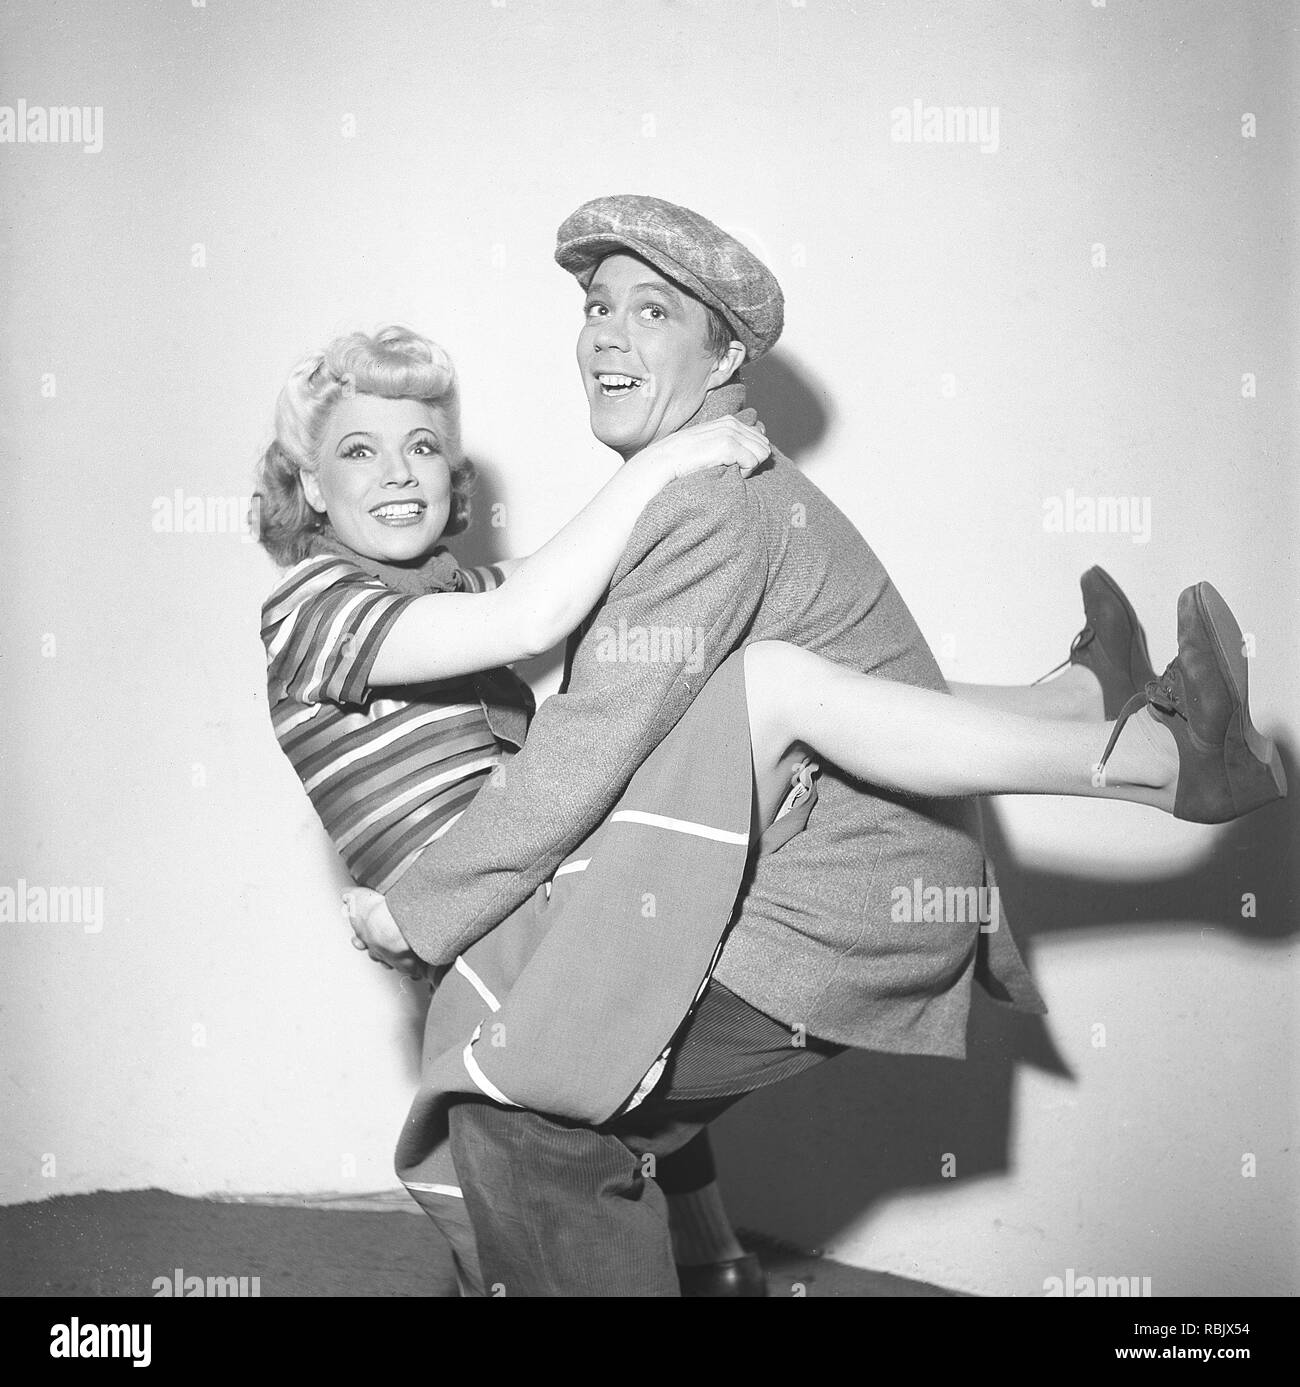 In ballo nel 1940s. Una giovane coppia a teatro danza insieme nei loro costumi di scena. Foto Kristoffersson Ref L35-3. La Svezia 1945 Foto Stock